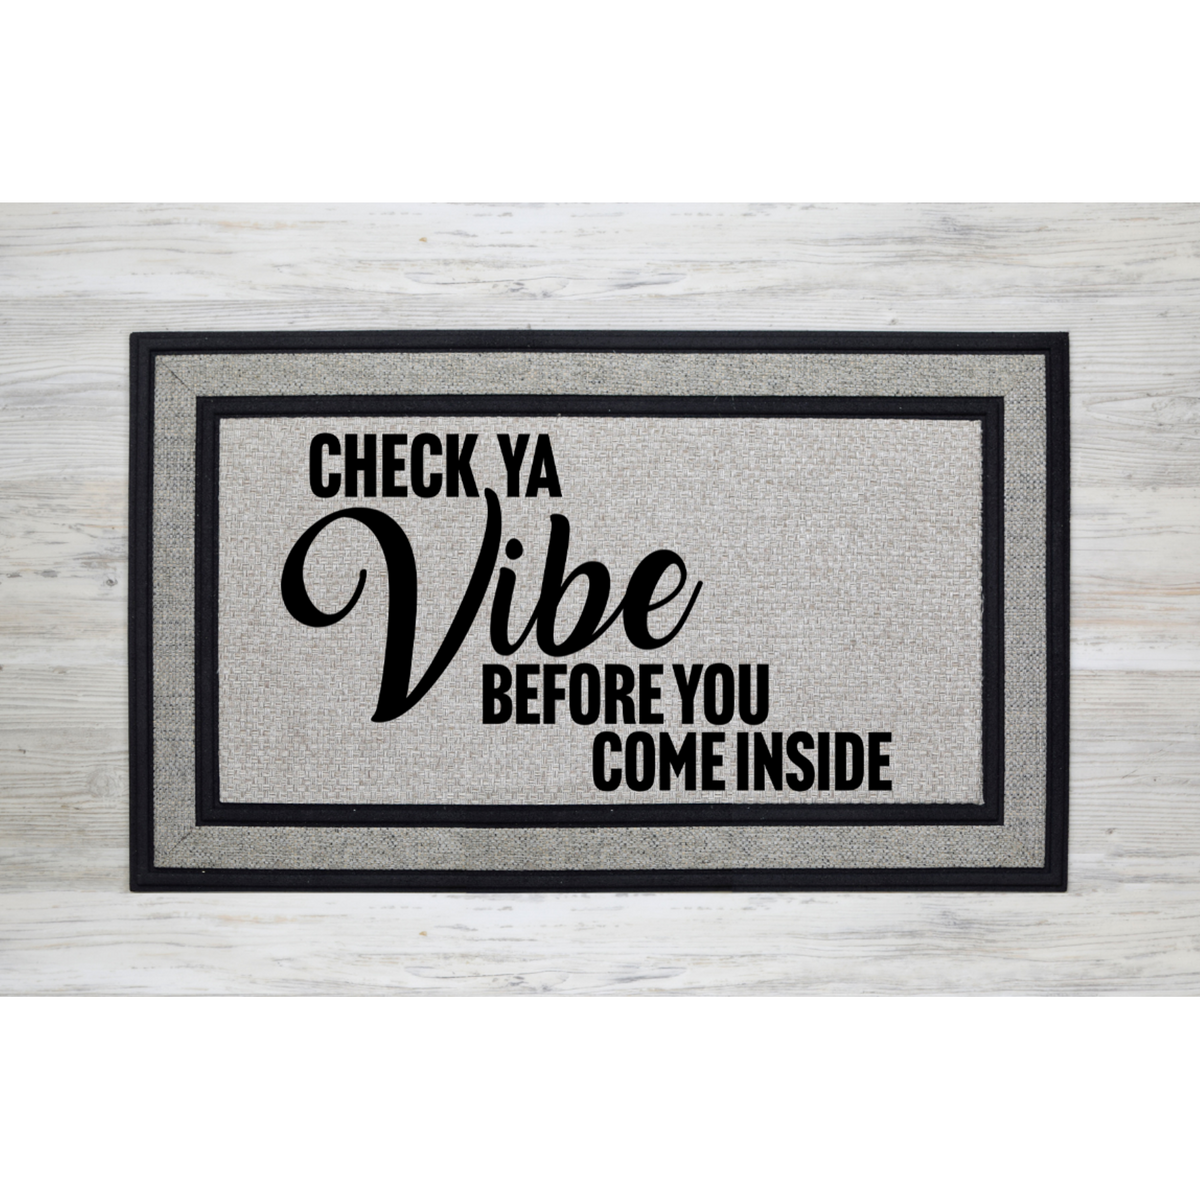 Good Vibes Only, Welcome Mat, Funny Doormat, Custom Doormat